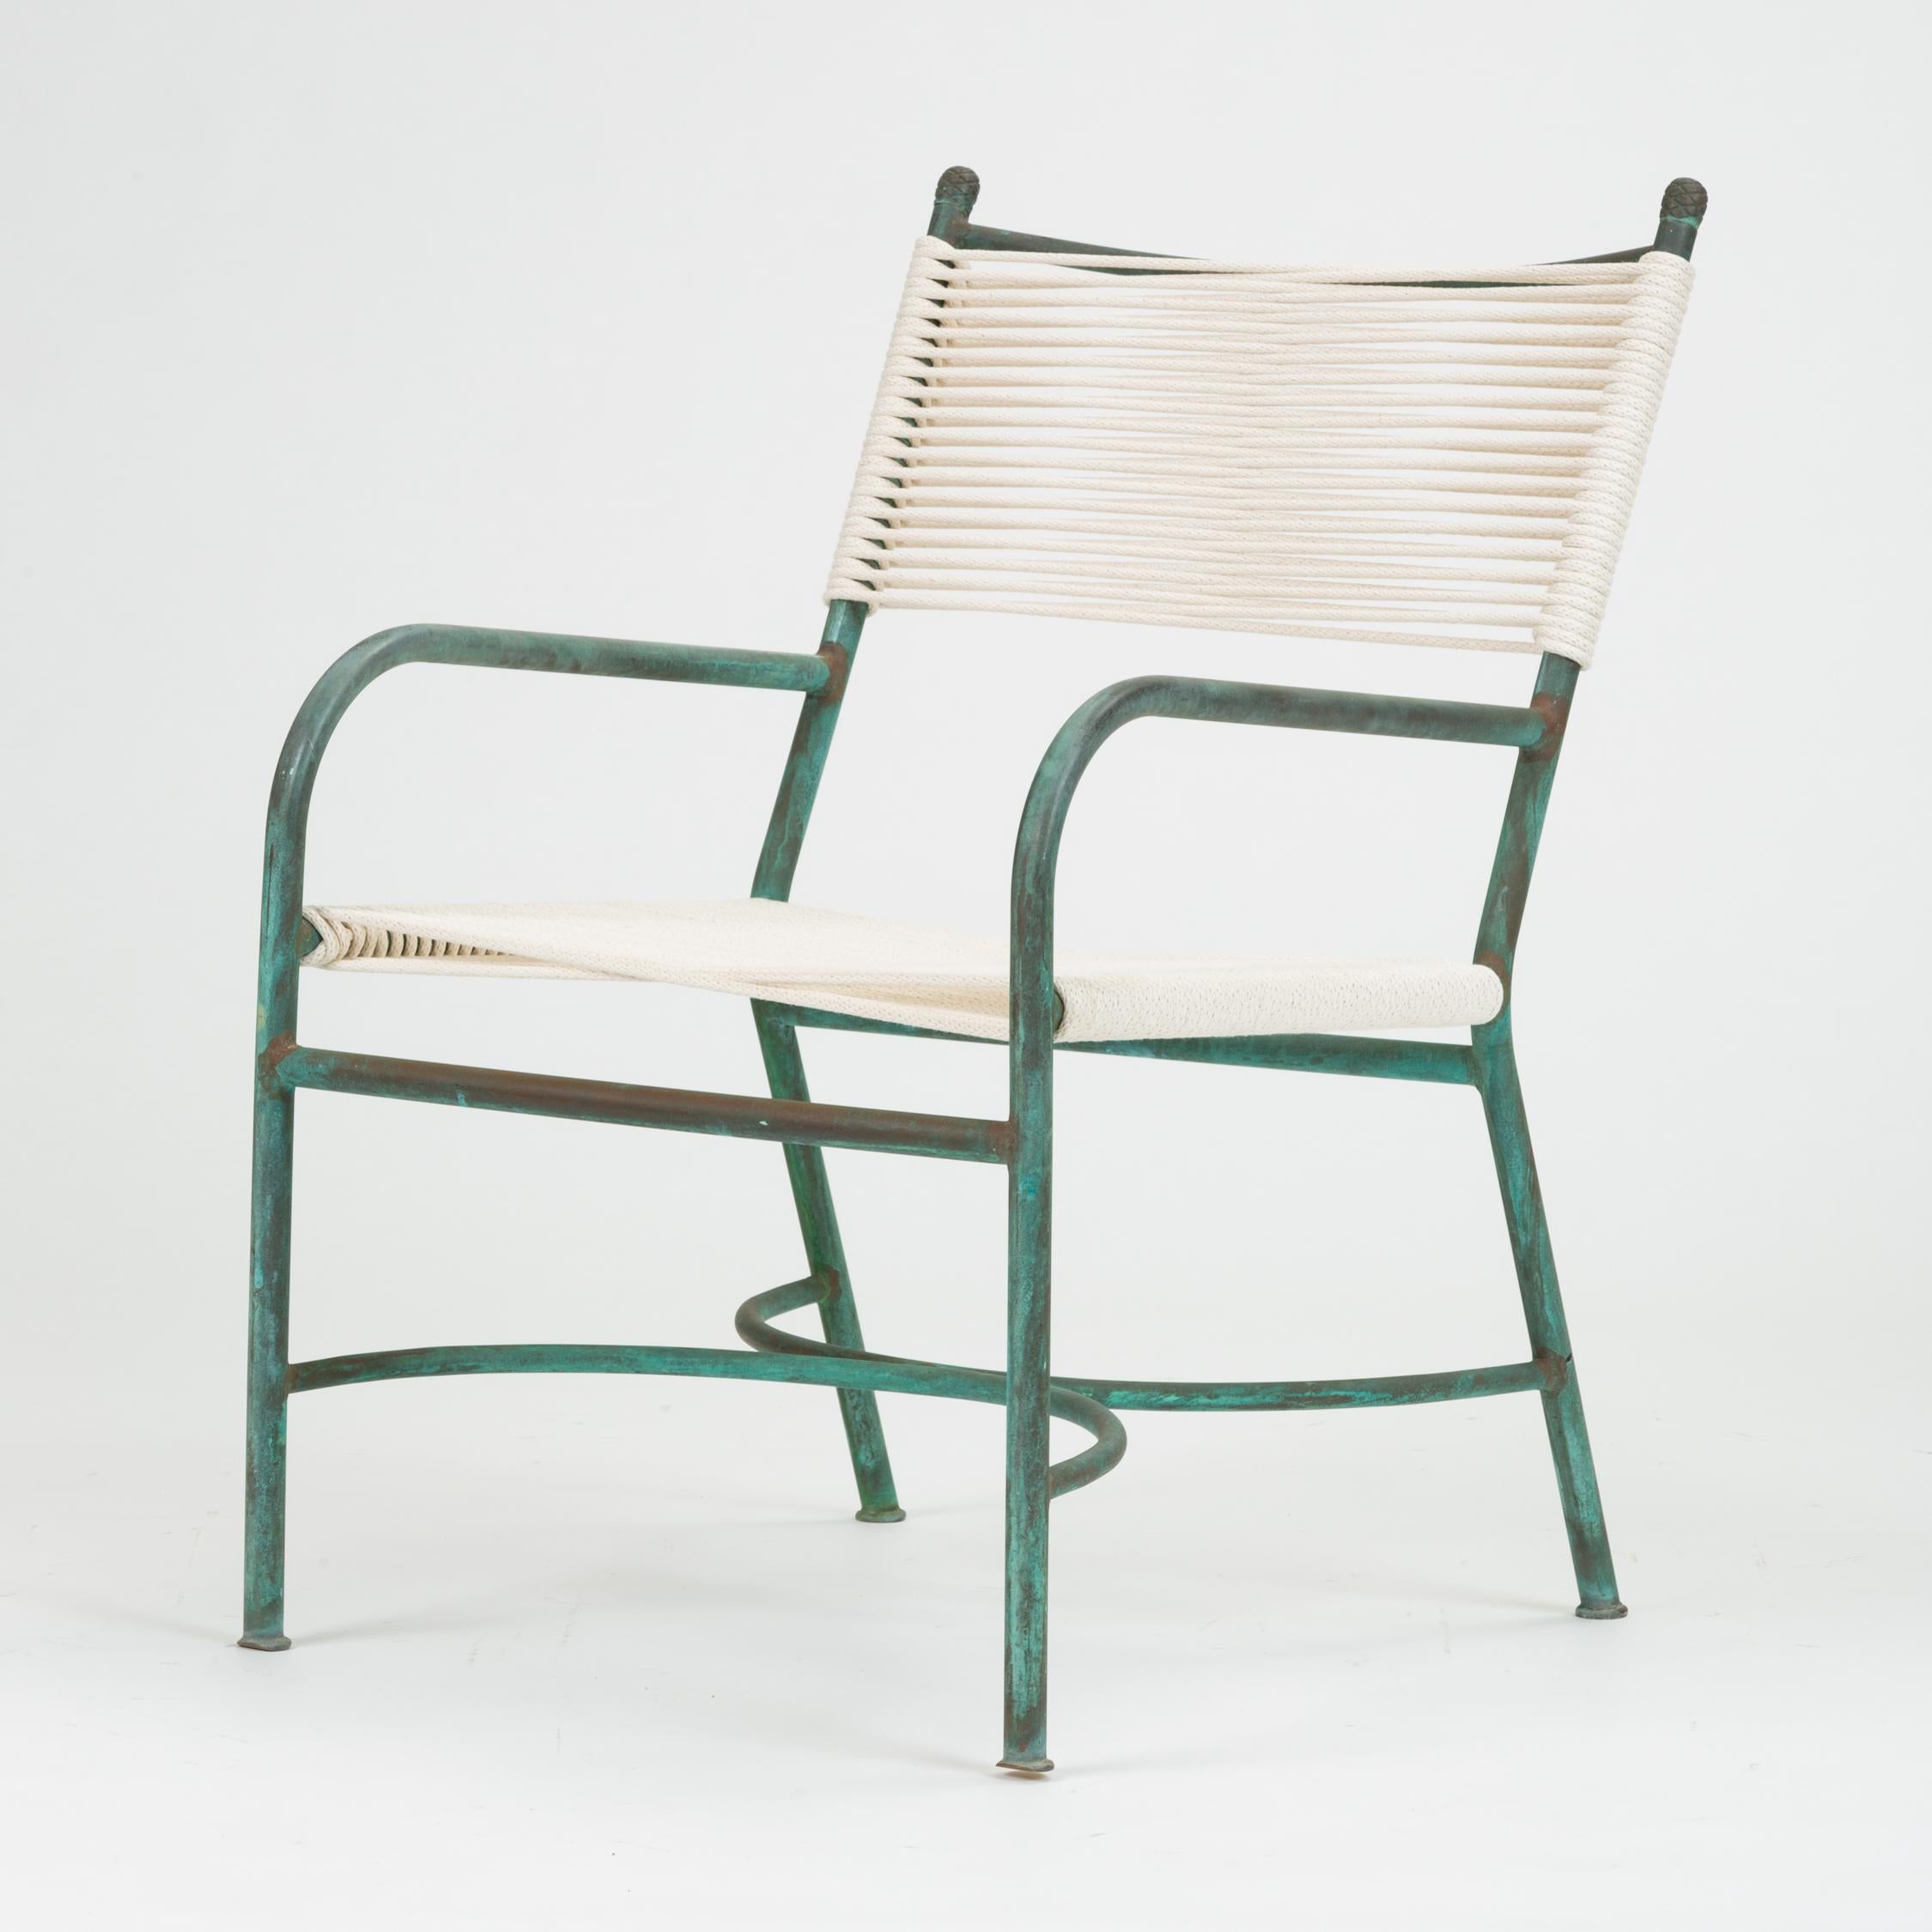 Une chaise longue de patio en bronze fabriquée en Californie par l'antécédent de Walter Lamb, Robert Lewis. Le tube en bronze de cet exemple est très fin, sculpté en une chaise avec un dossier incliné, des bras relativement bas et des supports en